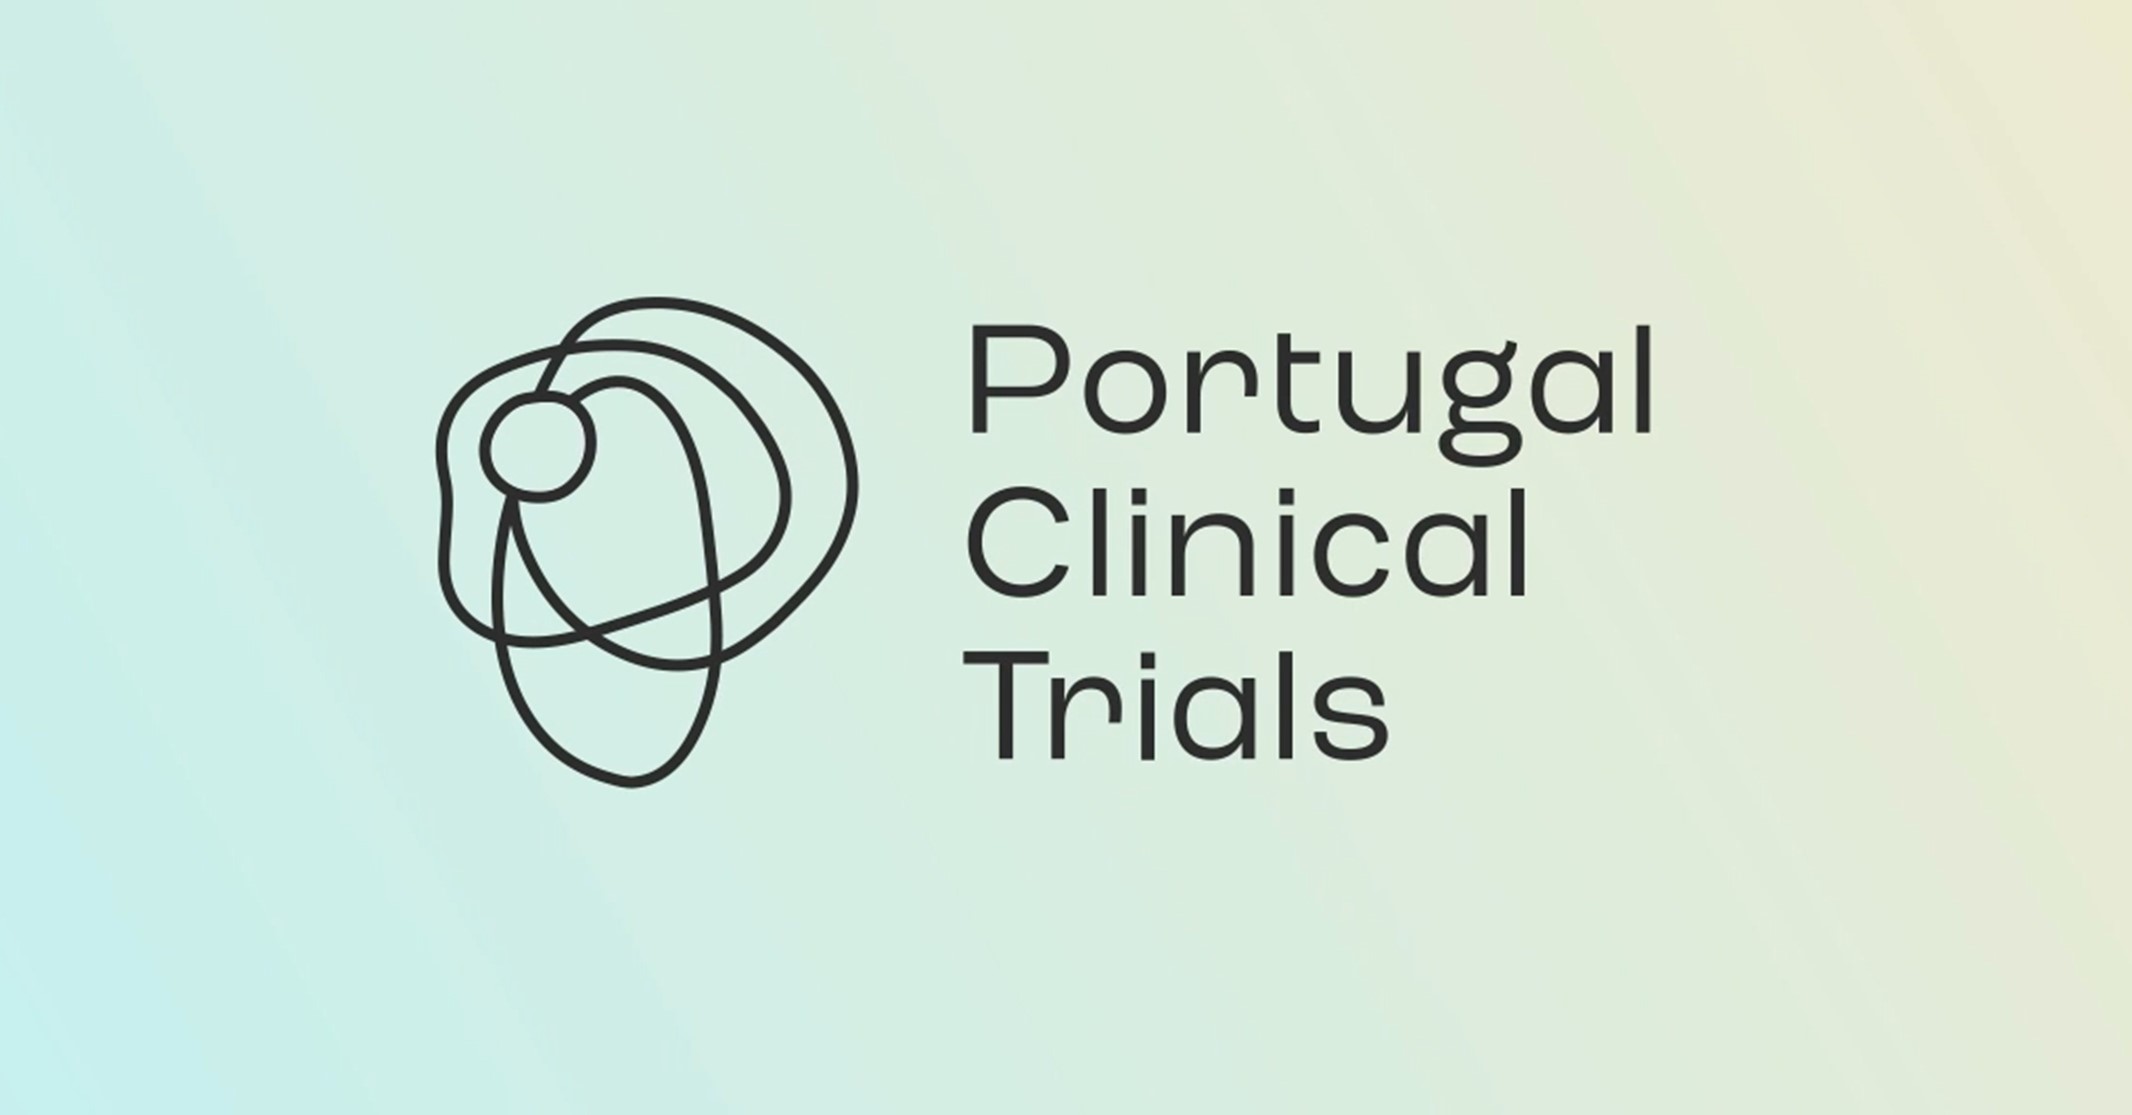 Questionário – experiência e opinião dos utilizadores com o portal Portugal Clinical Trials